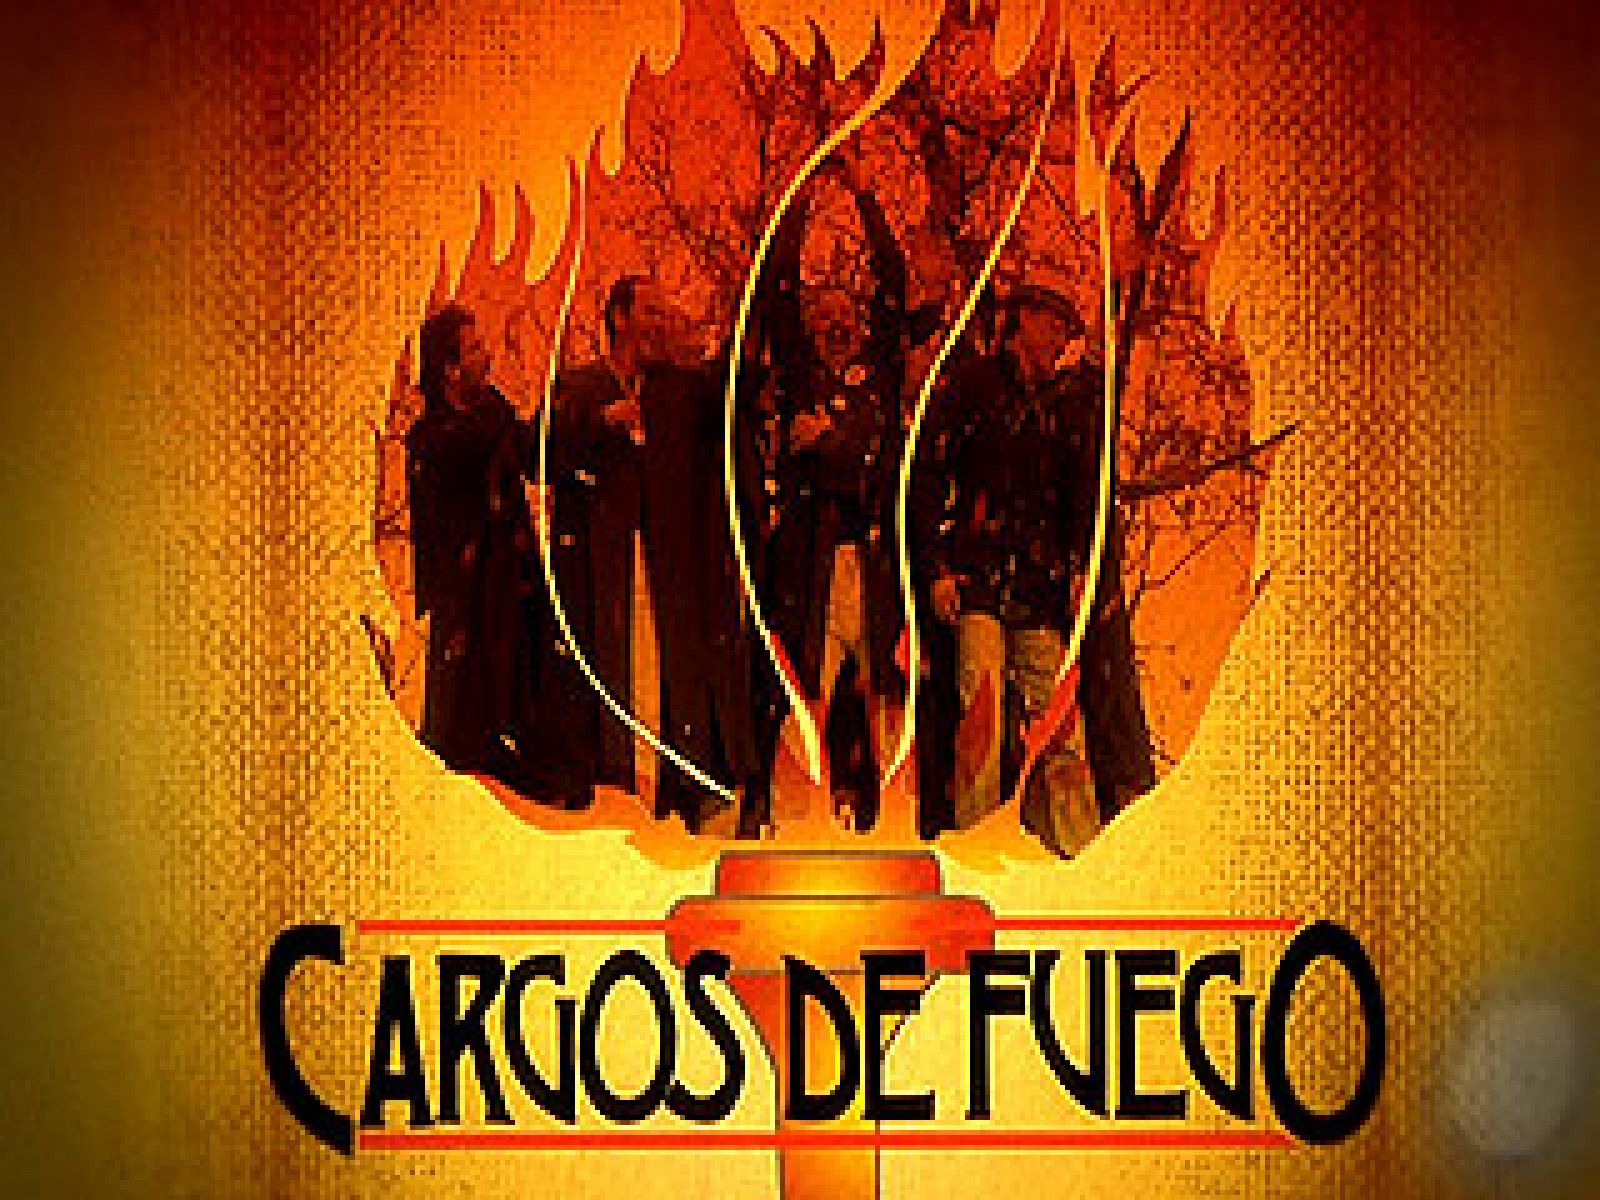 Especial Nochevieja con José Mota - Cargos de Fuego